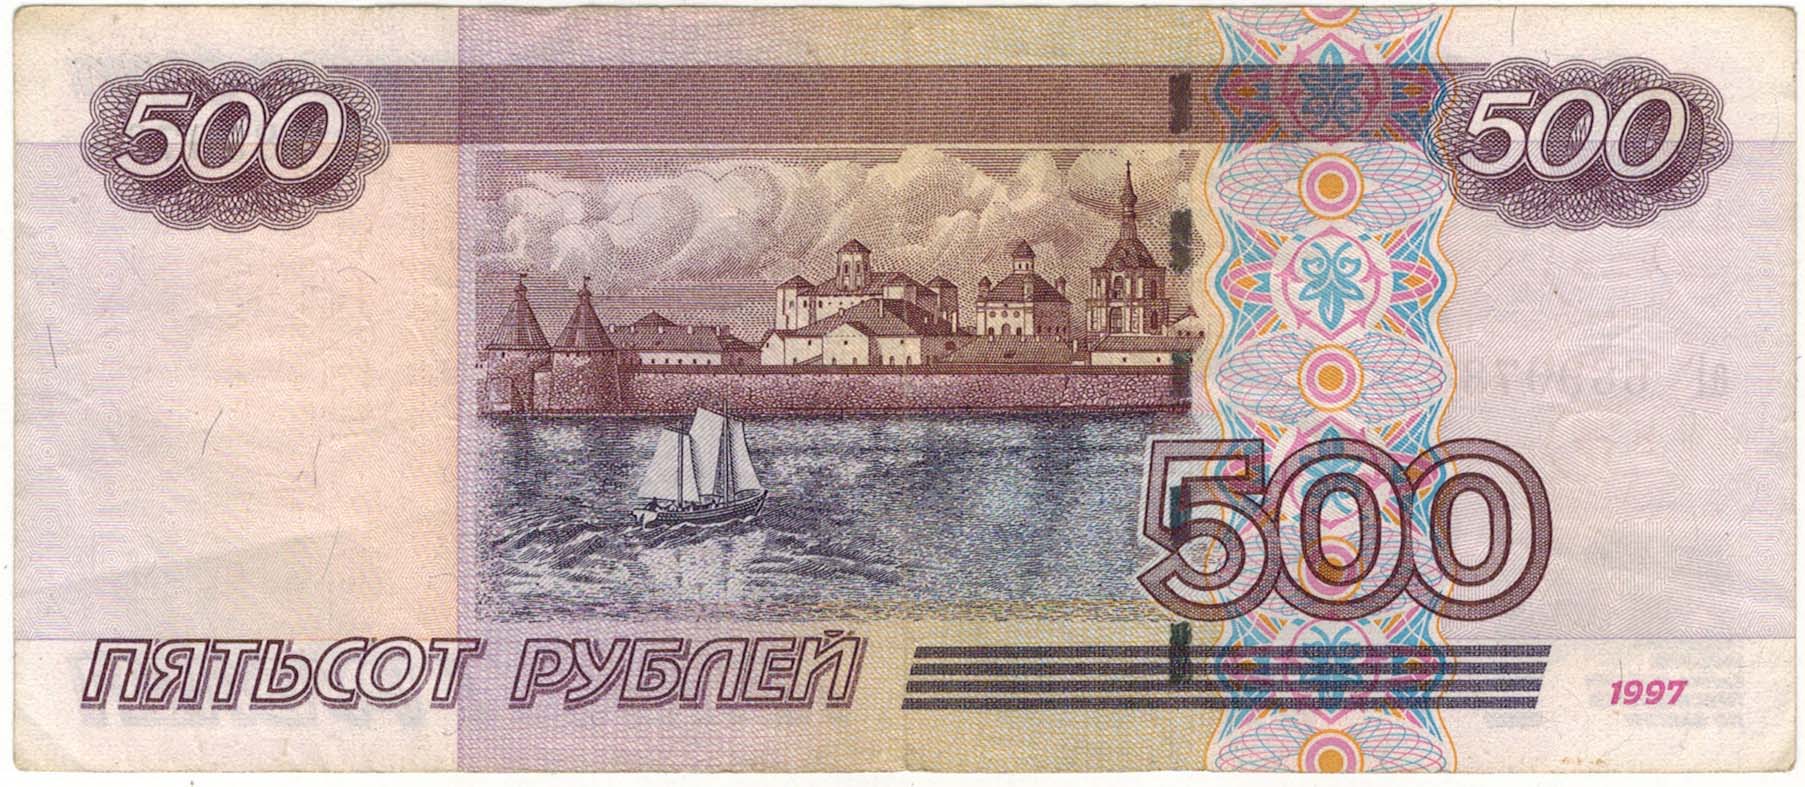 Пятьсот тысяч рублей купюра 1995